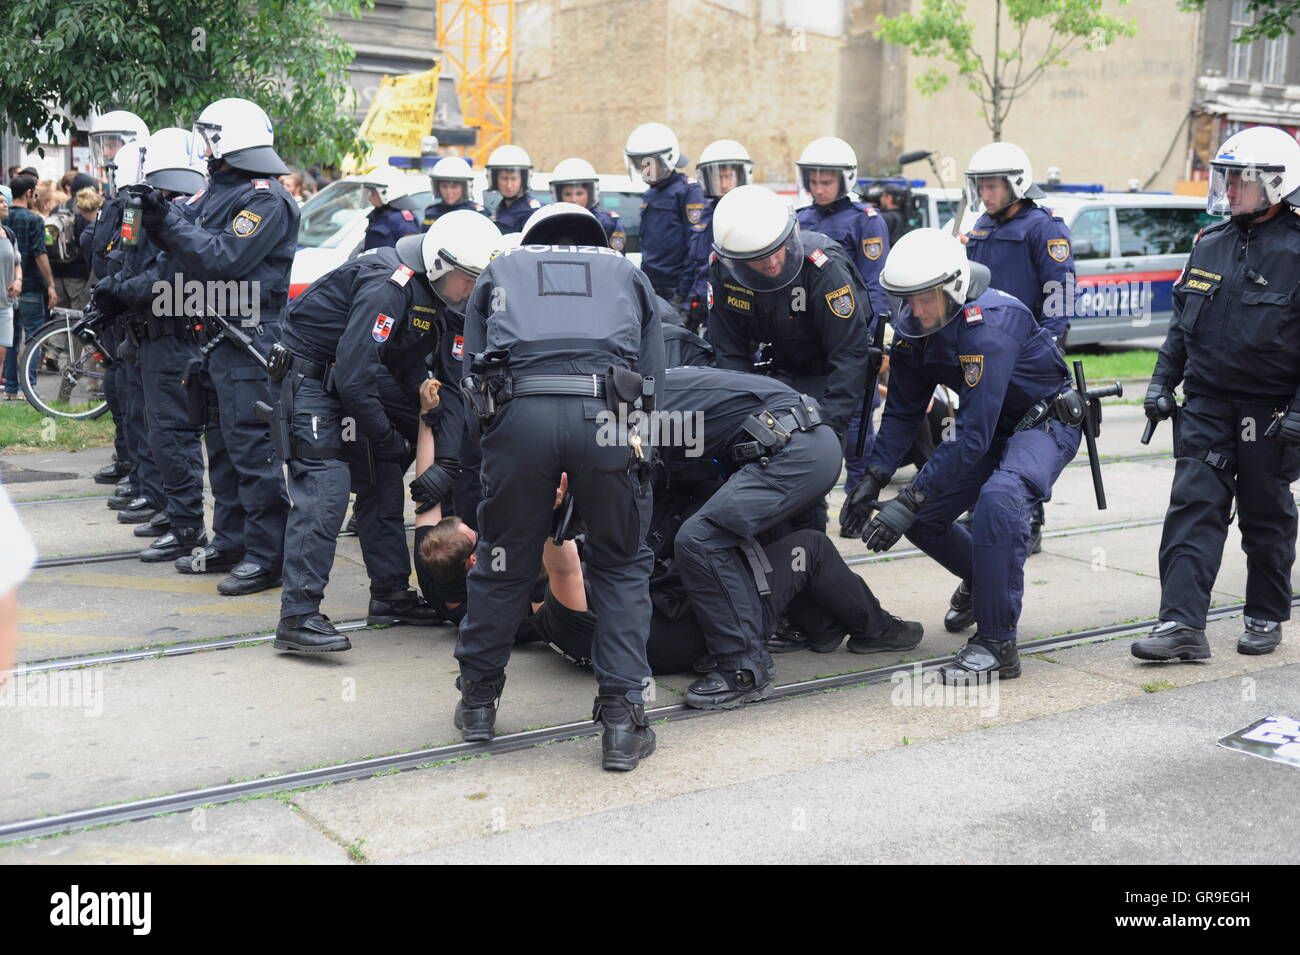 La présence policière lors de manifestations Banque D'Images